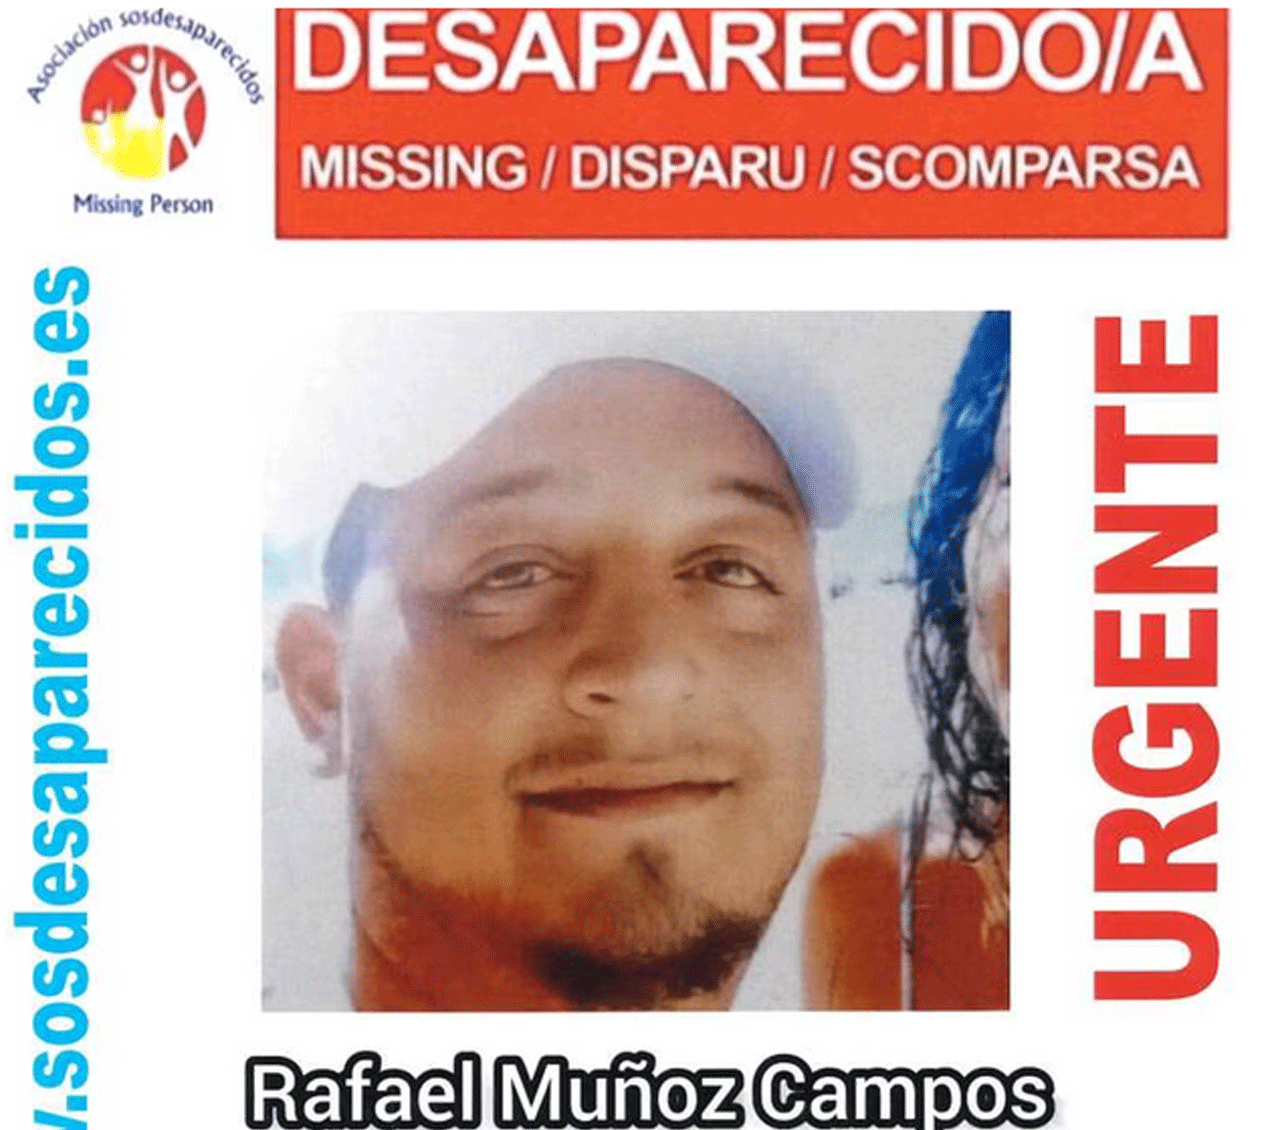 Cartel anunciador de la desaparición de Rafael Muñoz Campos